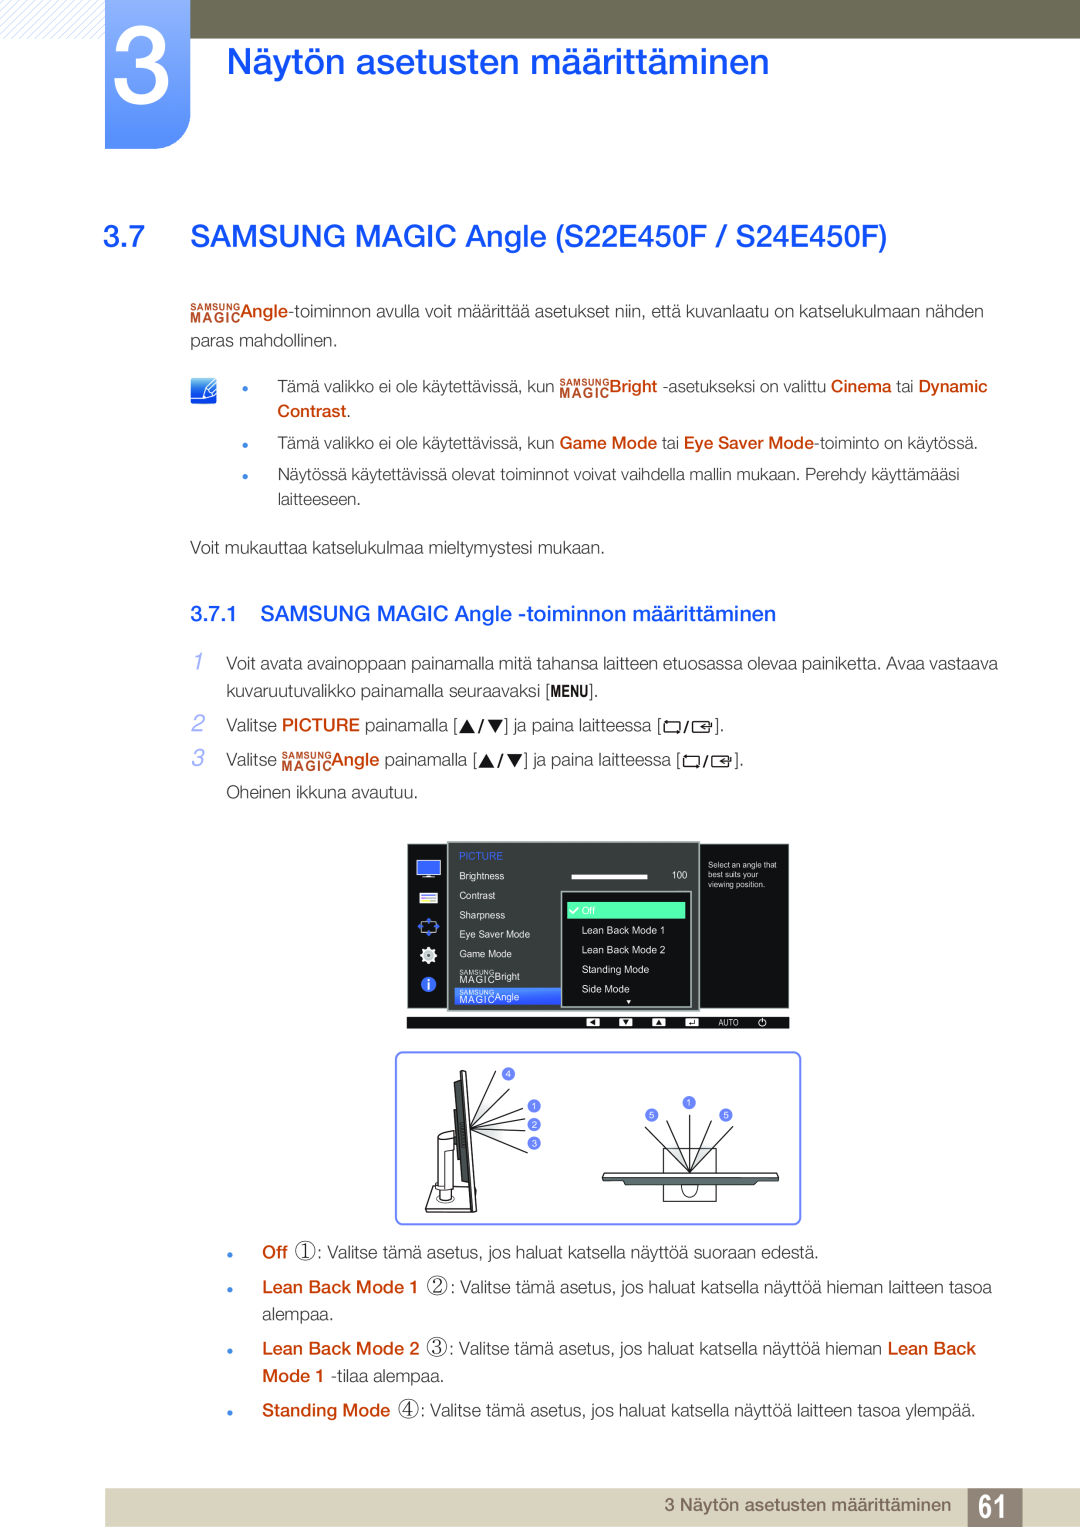 Samsung LS27E65UXS/EN, LS23E65UDC/EN SAMSUNG MAGIC Angle S22E450F / S24E450F, SAMSUNG MAGIC Angle -toiminnon määrittäminen 